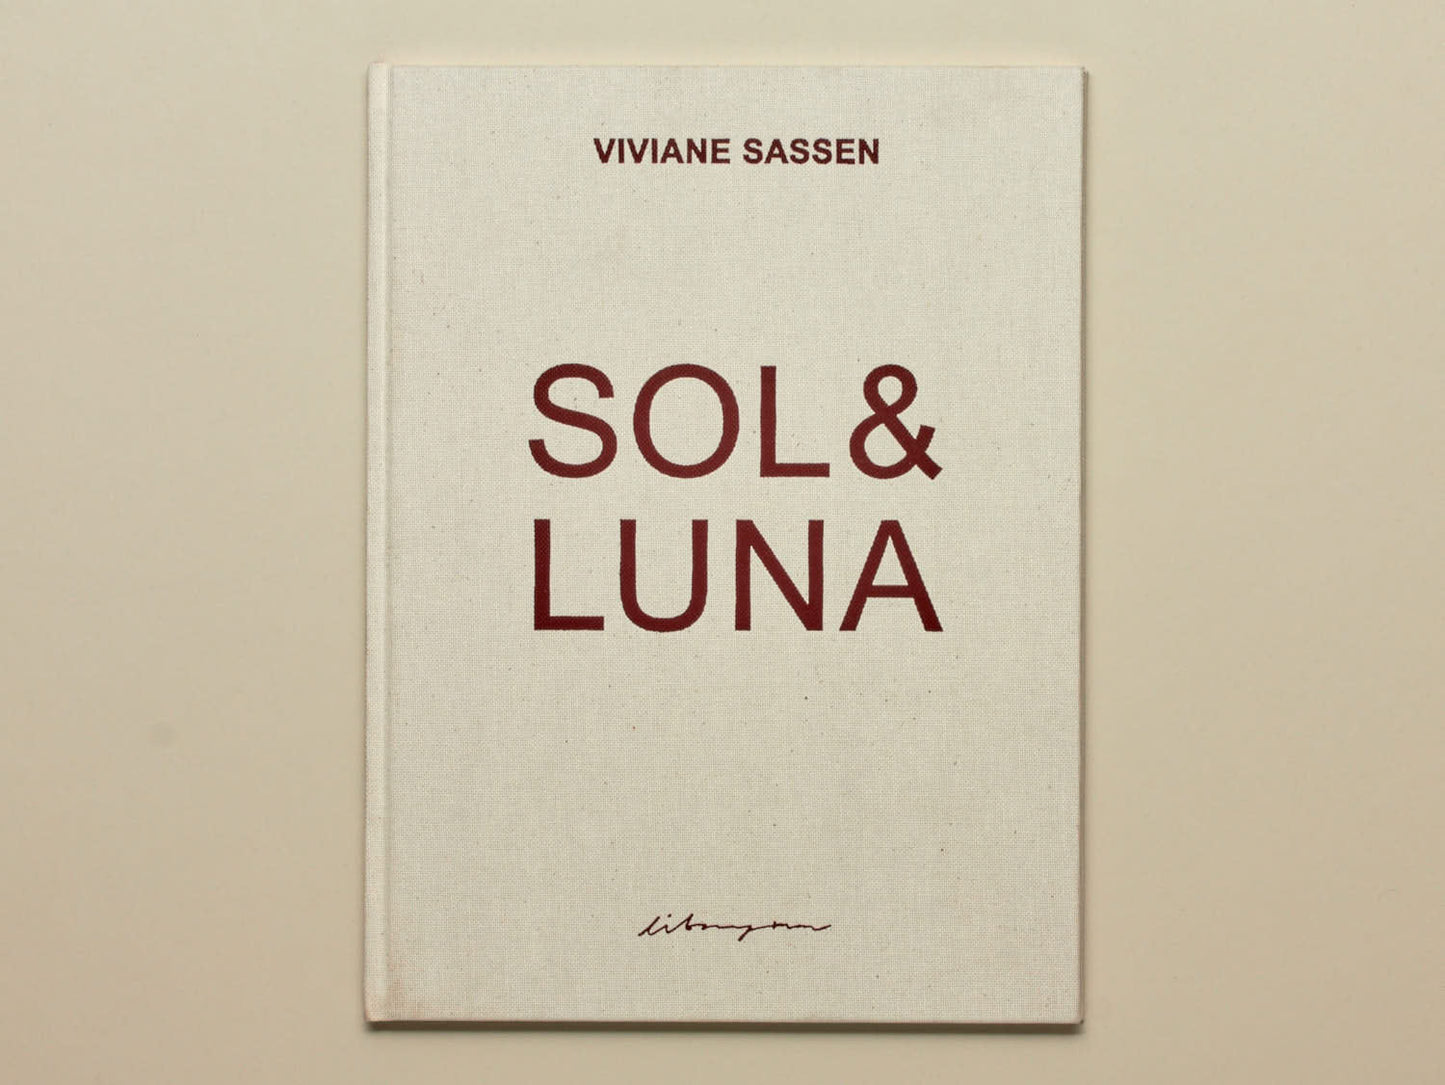 Viviane Sassen, Sol & Luna